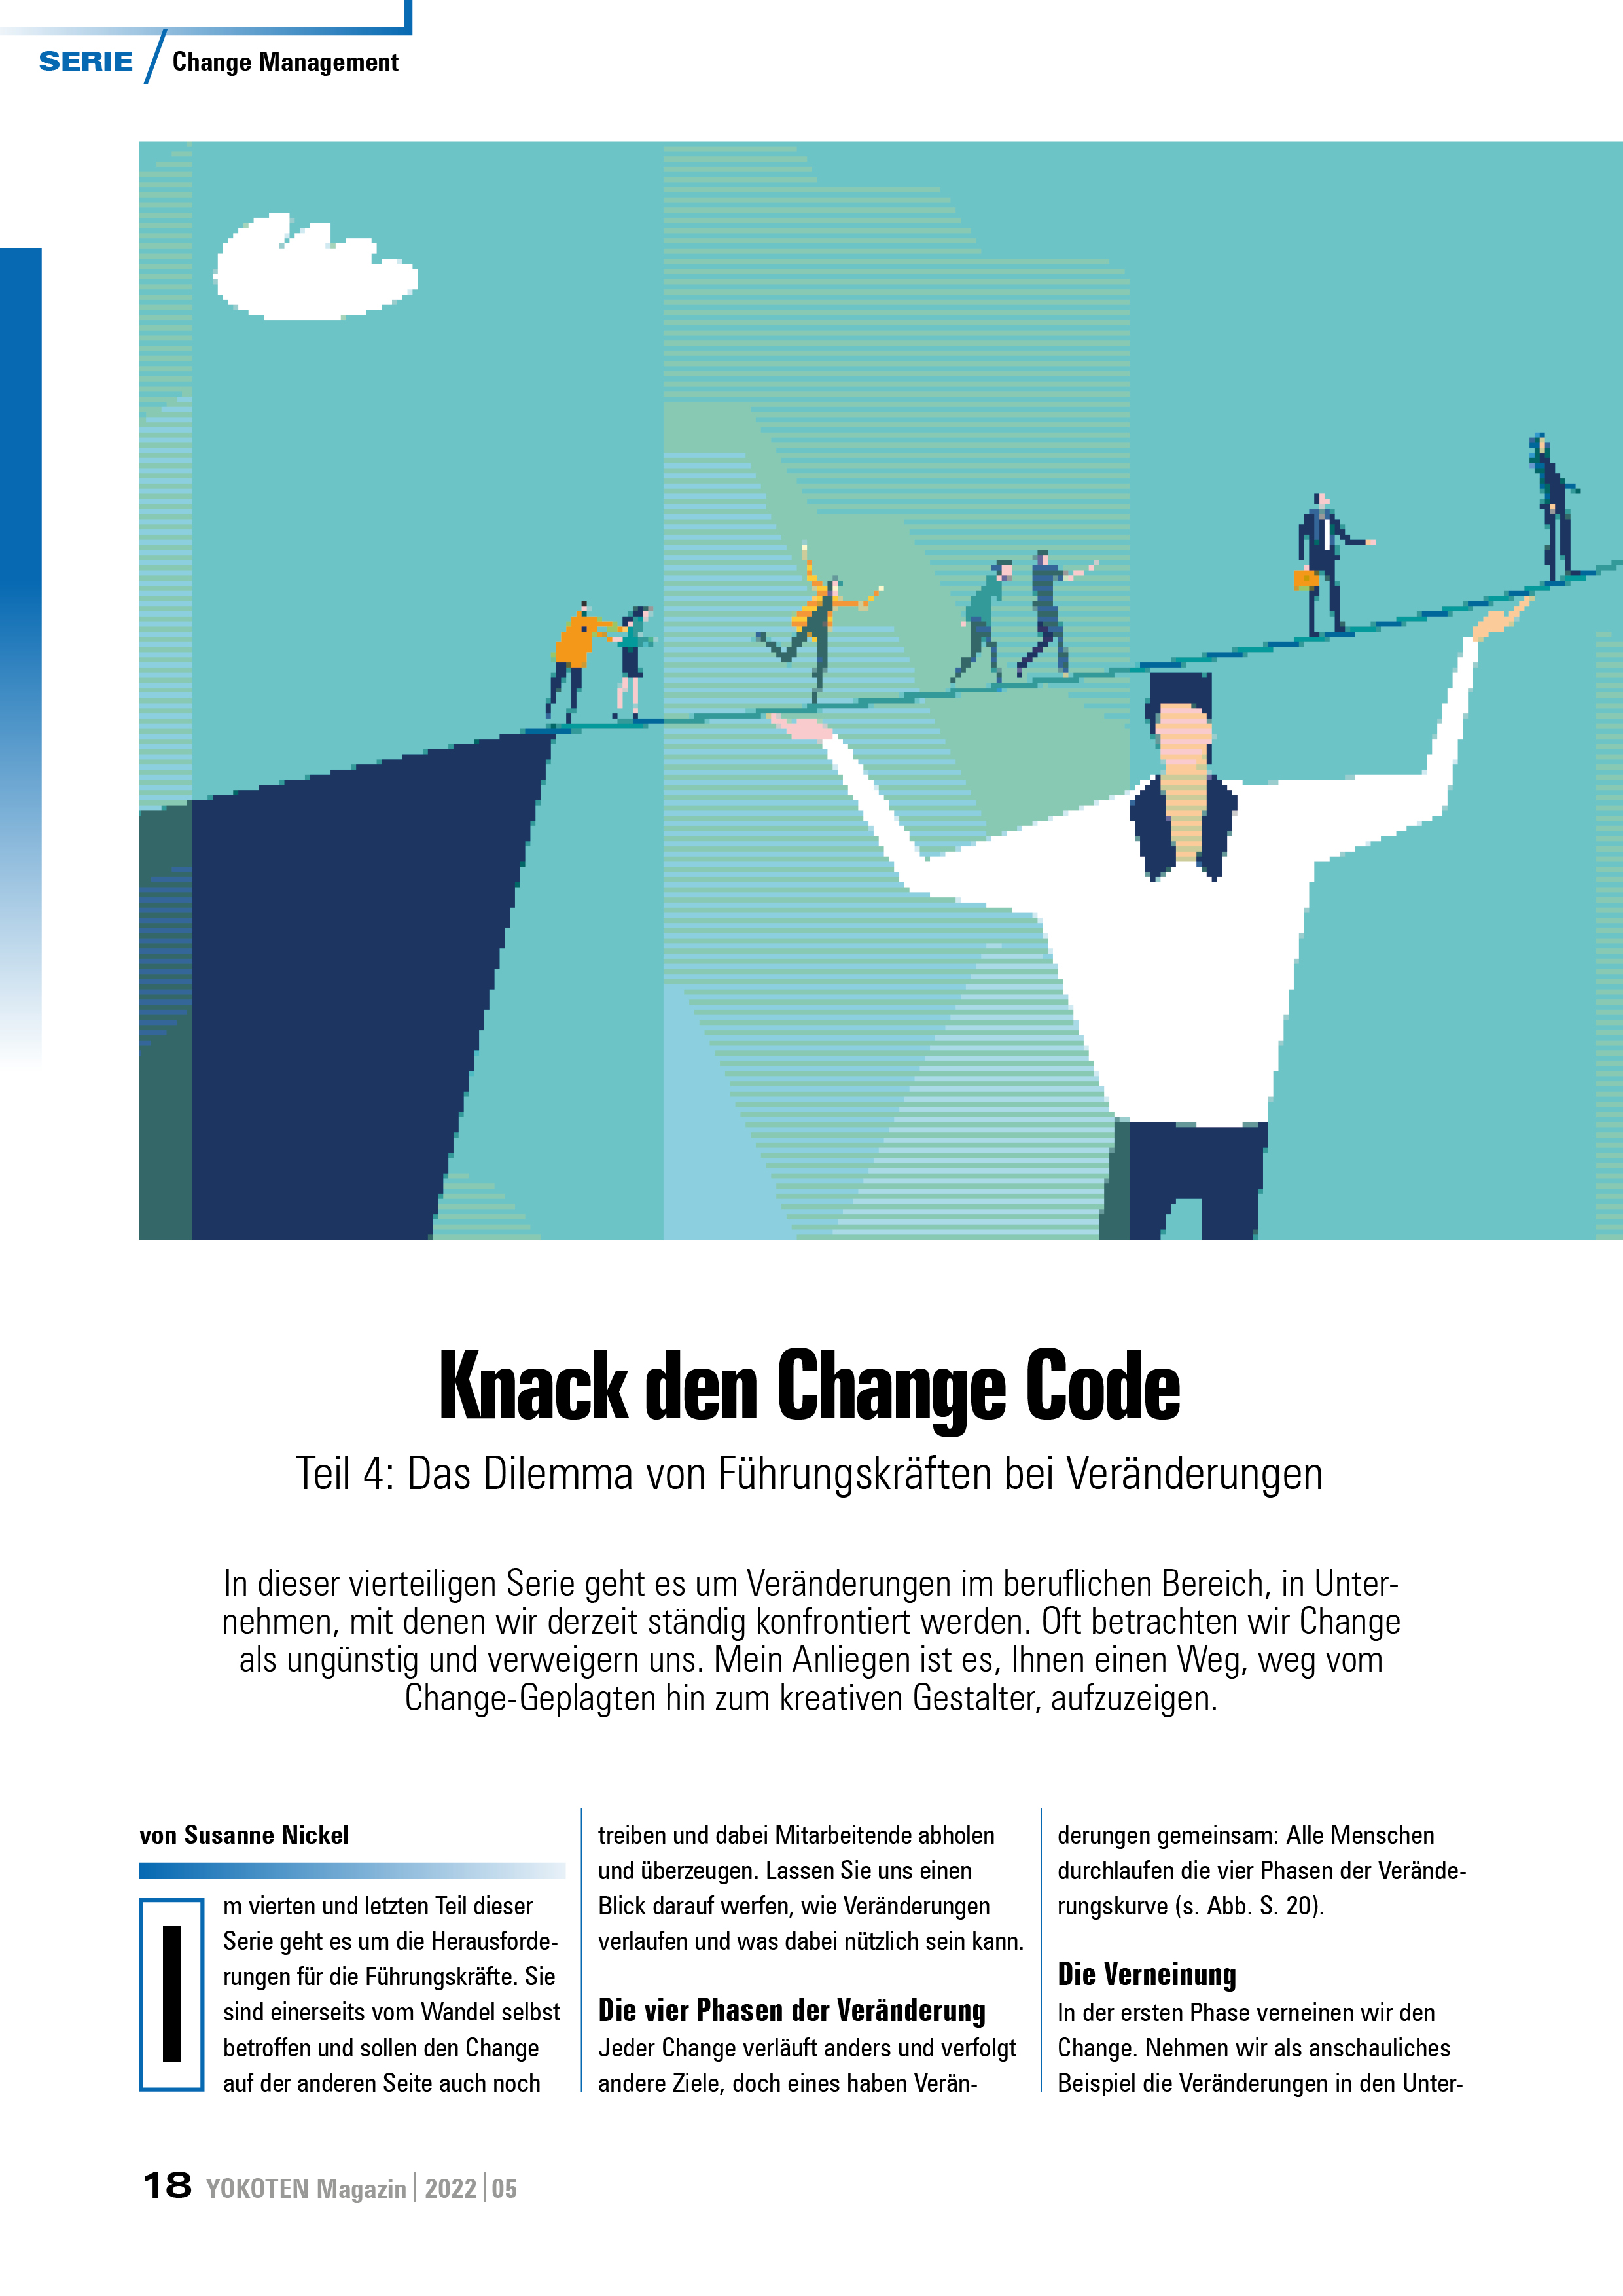 Knack den Change Code - Teil 4 - Artikel aus Fachmagazin YOKOTEN 2022-05